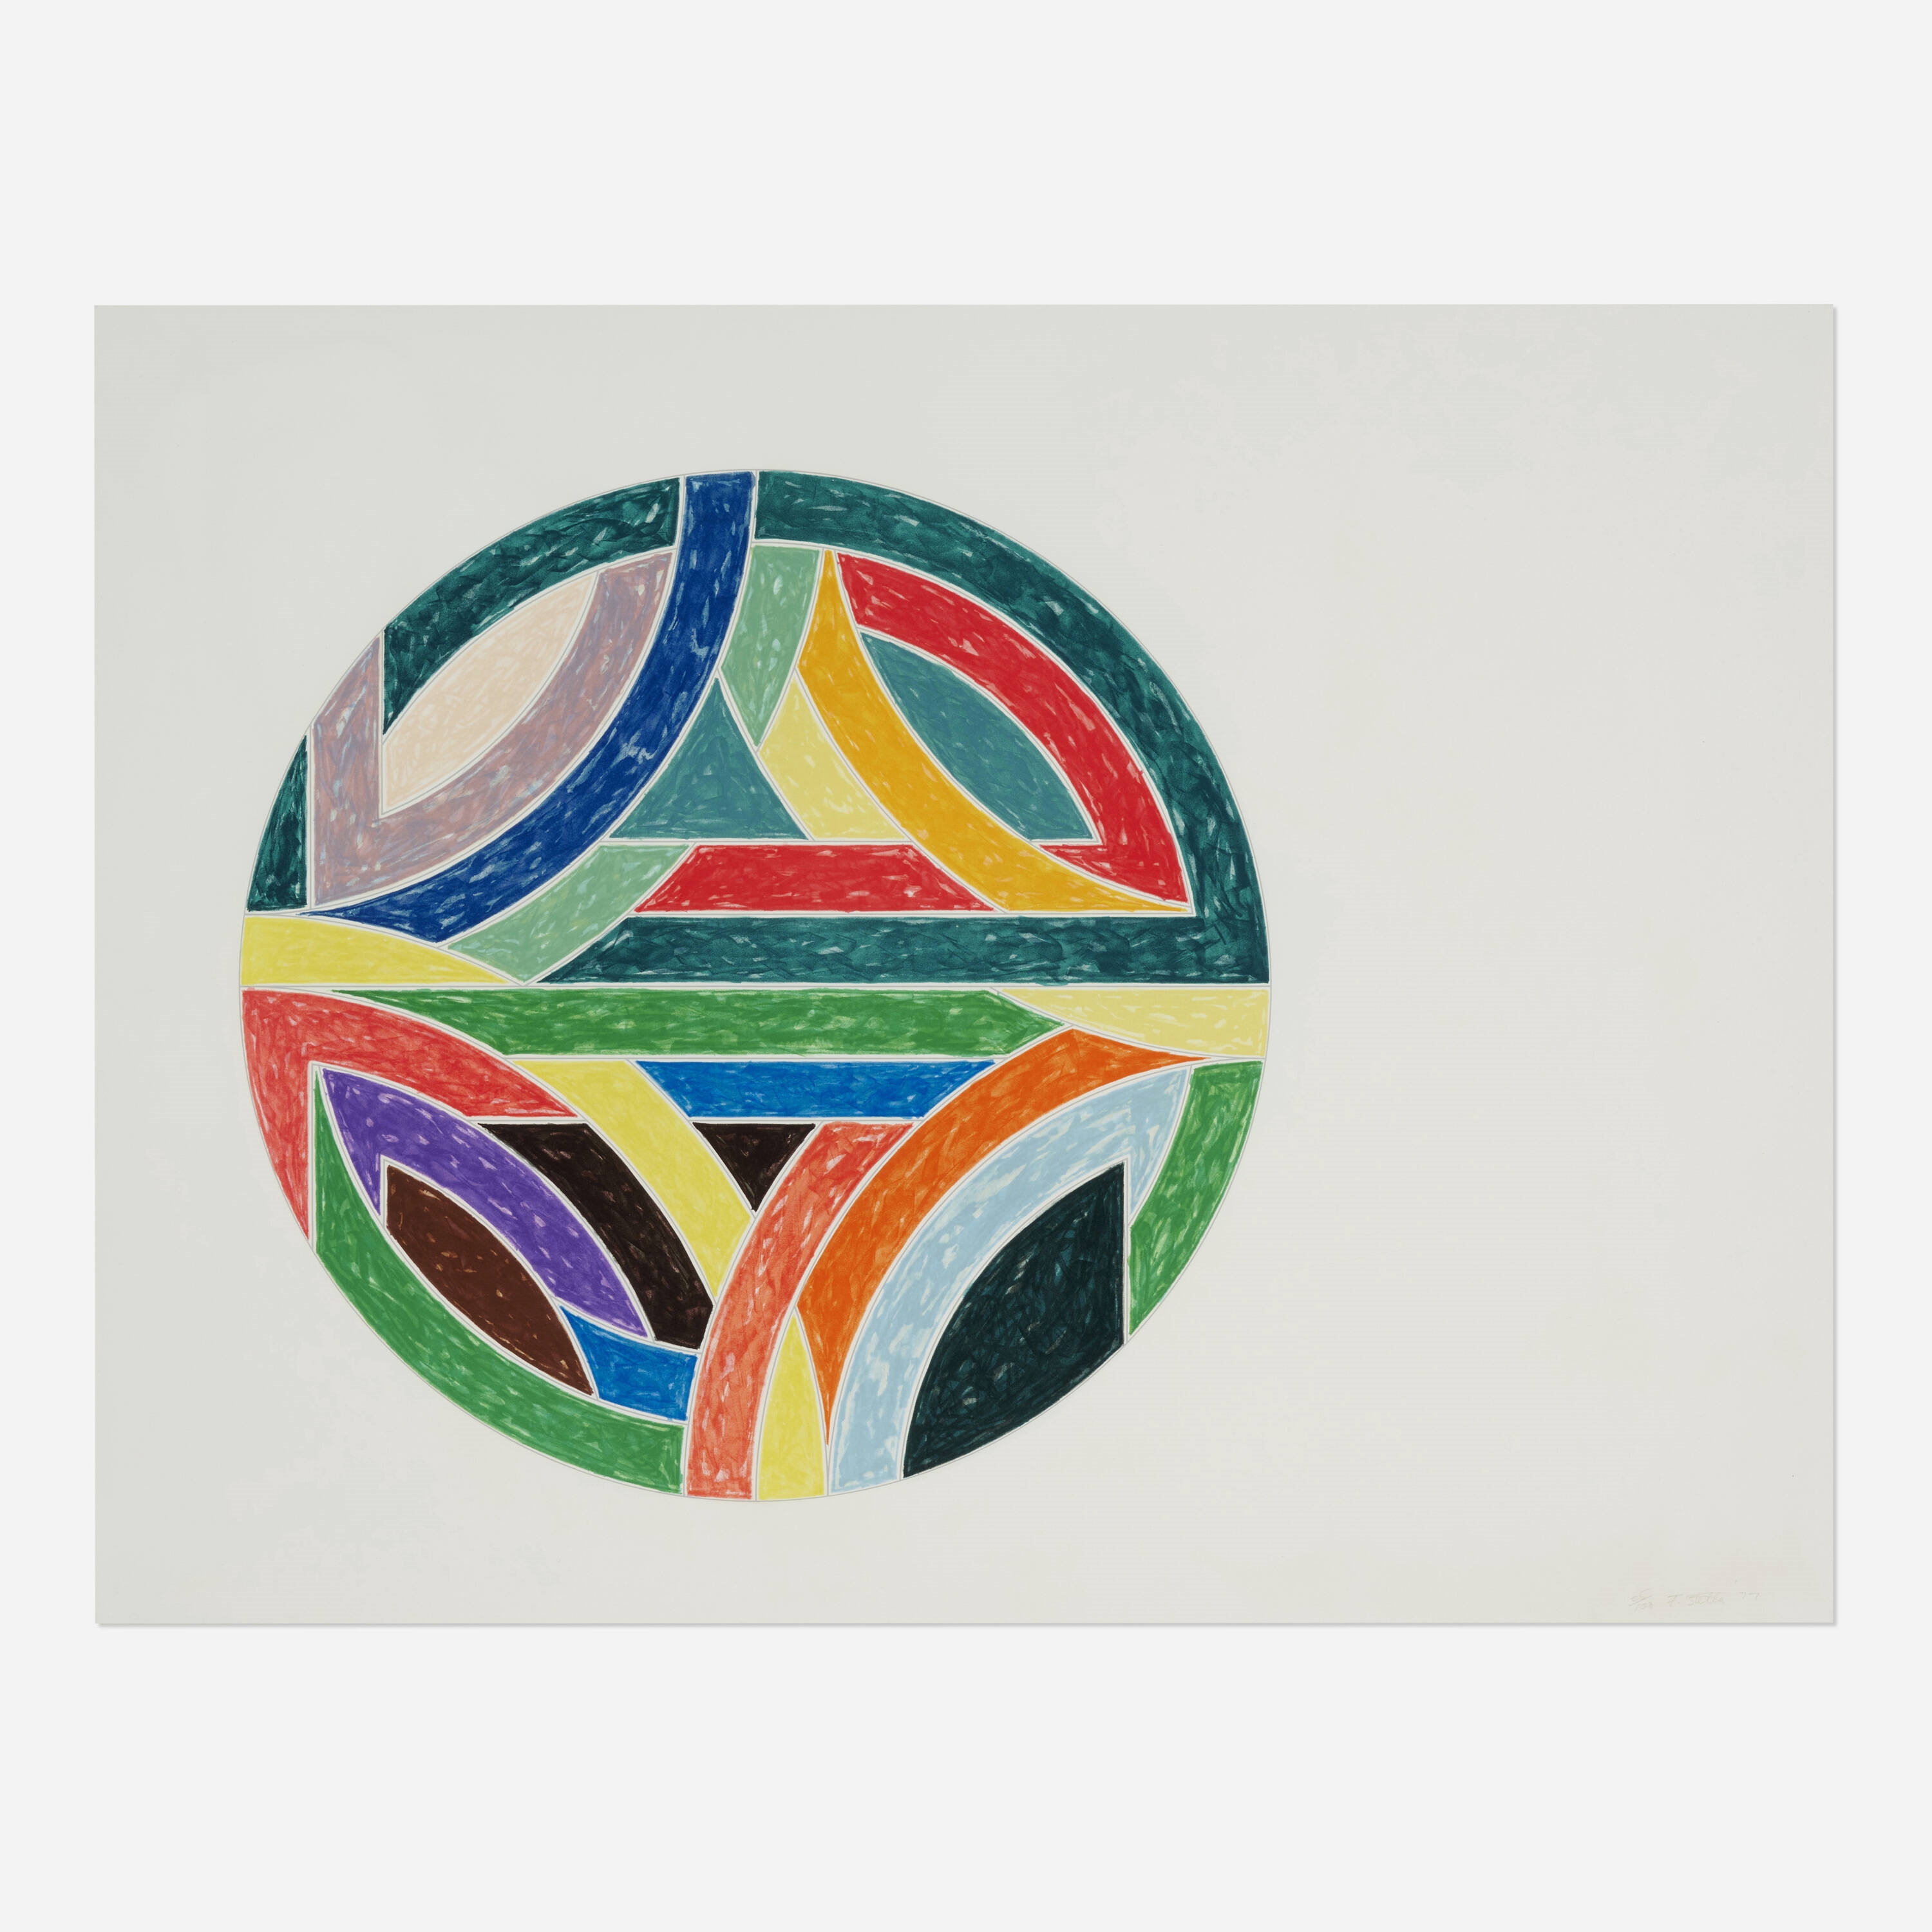 Sinjerli Variation IV by Frank Stella, 1977